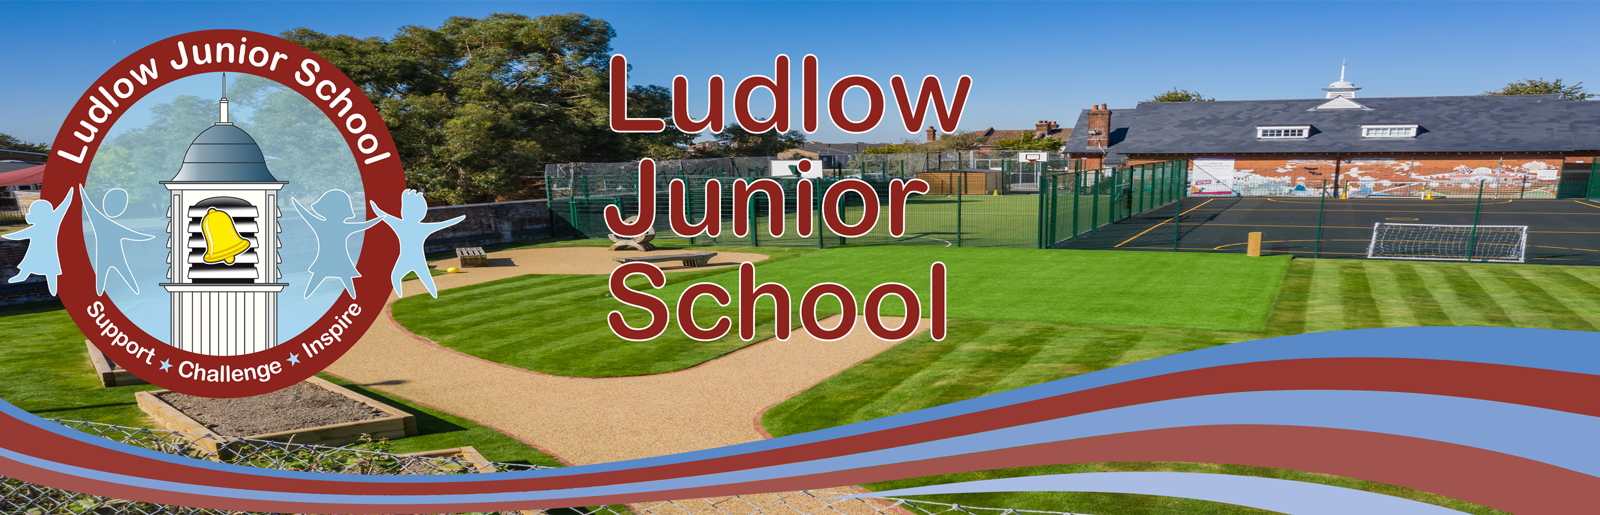 Ludlow Junior School